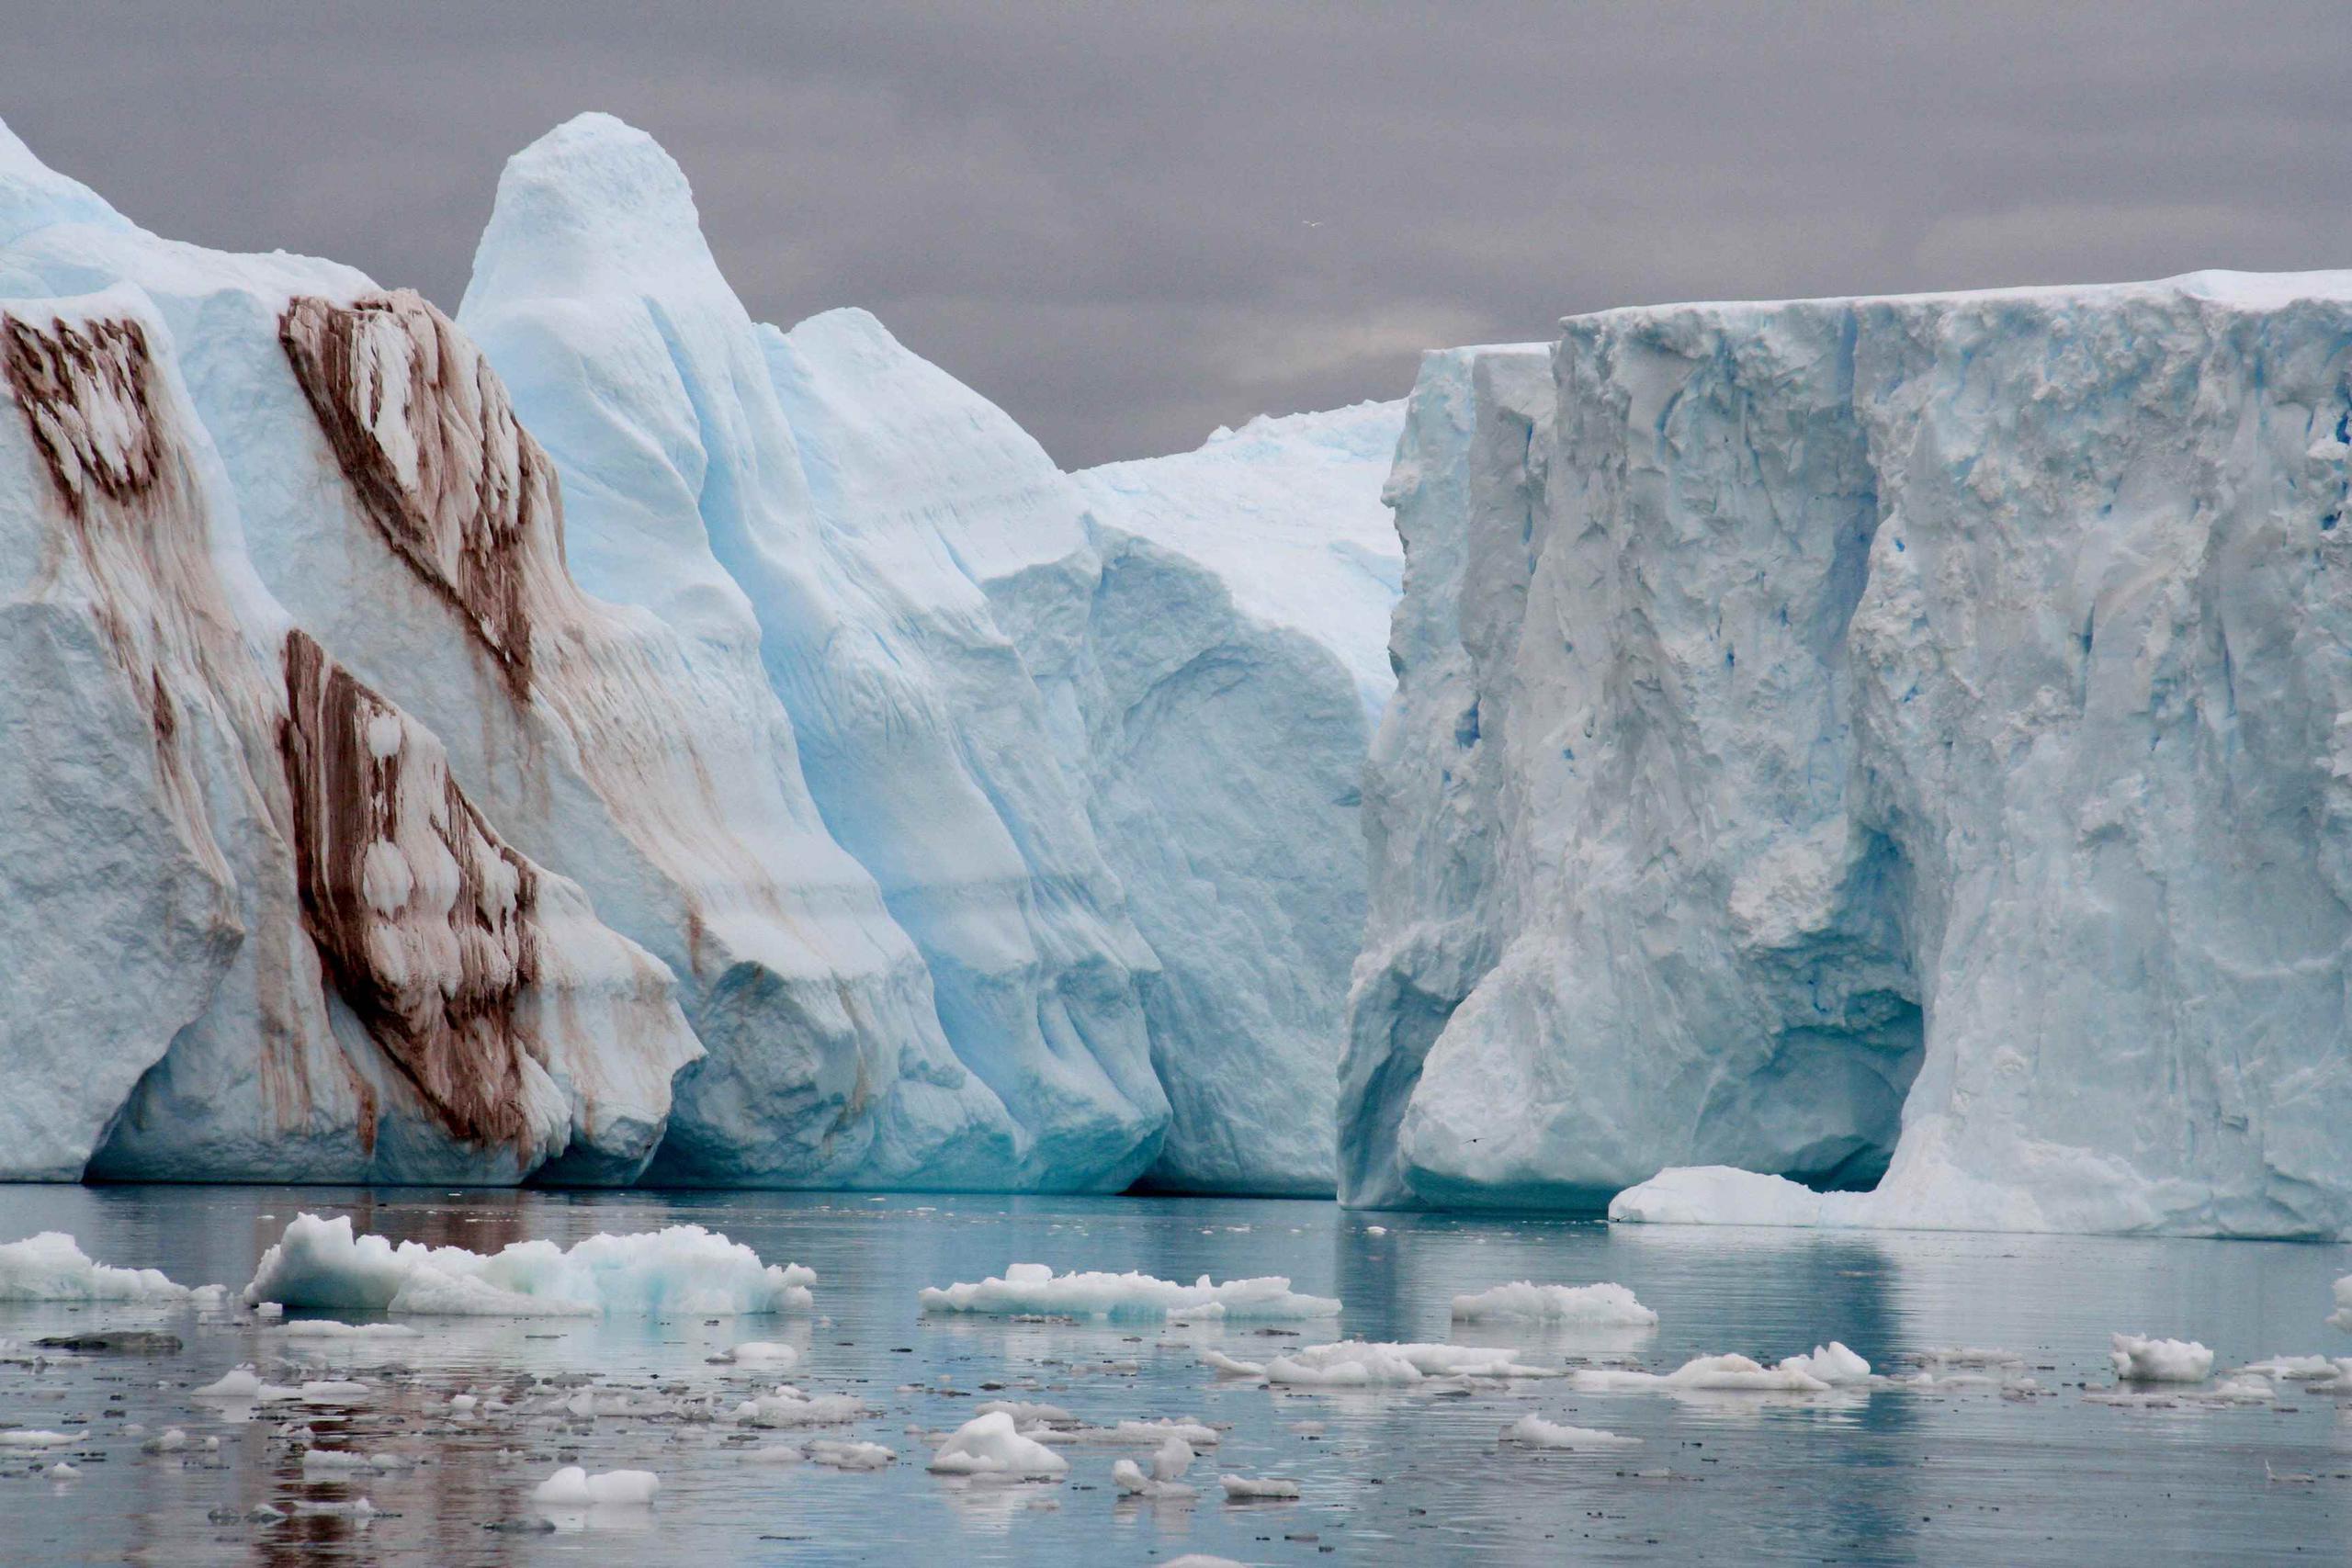 El calentamiento global aumentó la cantidad de icebergs en el mar, lo que mitigará un poco el calentamiento, hasta que desaparezcan por completo. (Antárctica / IPEV)